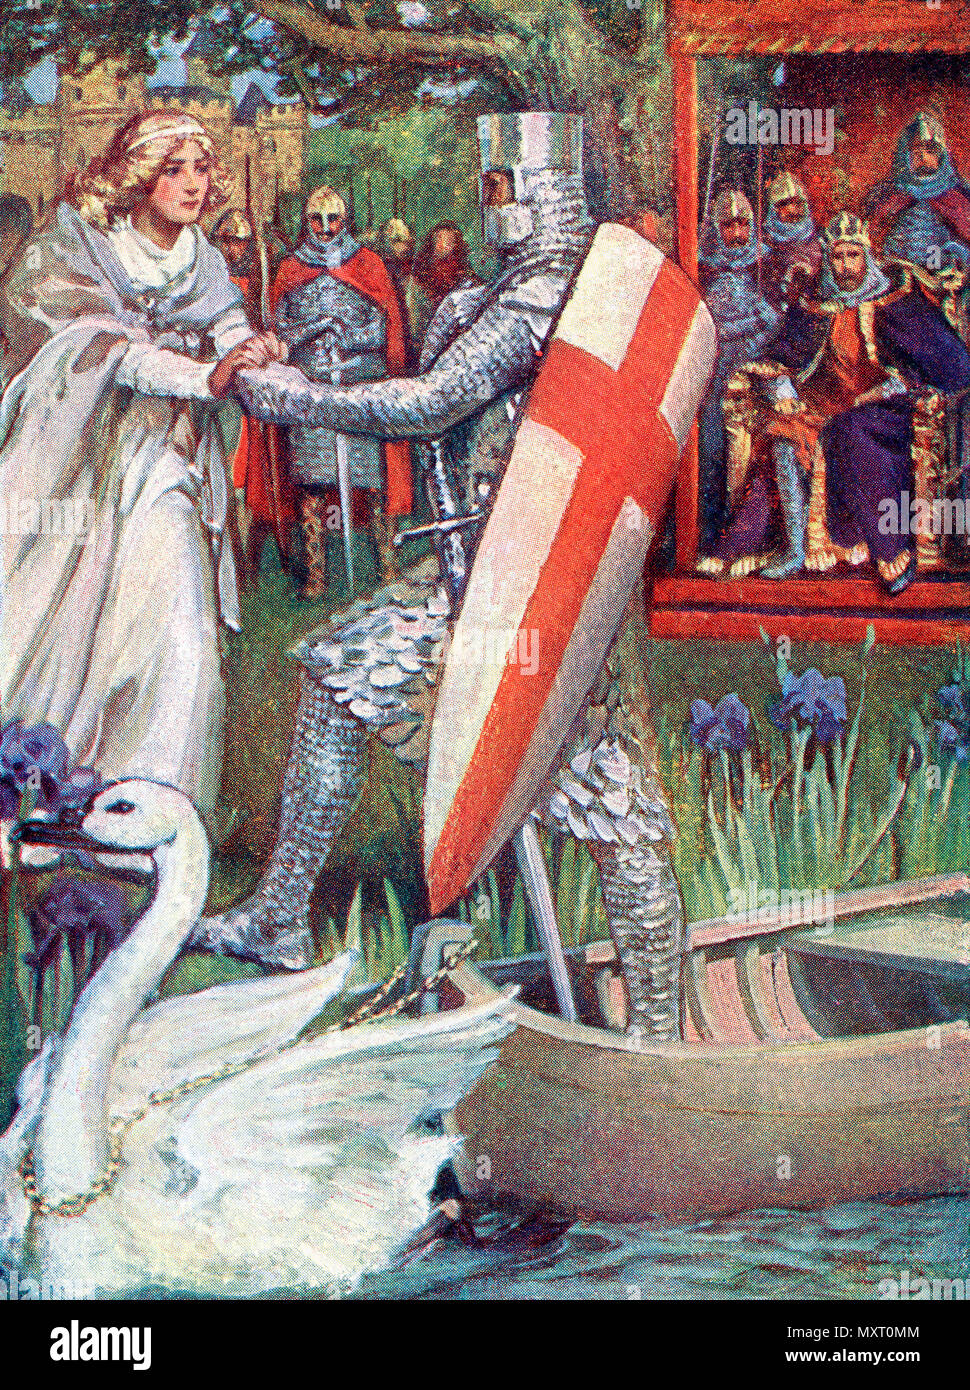 Elle est allée à sa rencontre avec main tendue. Frontispice de chevaliers du Graal : Lohengrin, Galahad publié en 1909. Banque D'Images